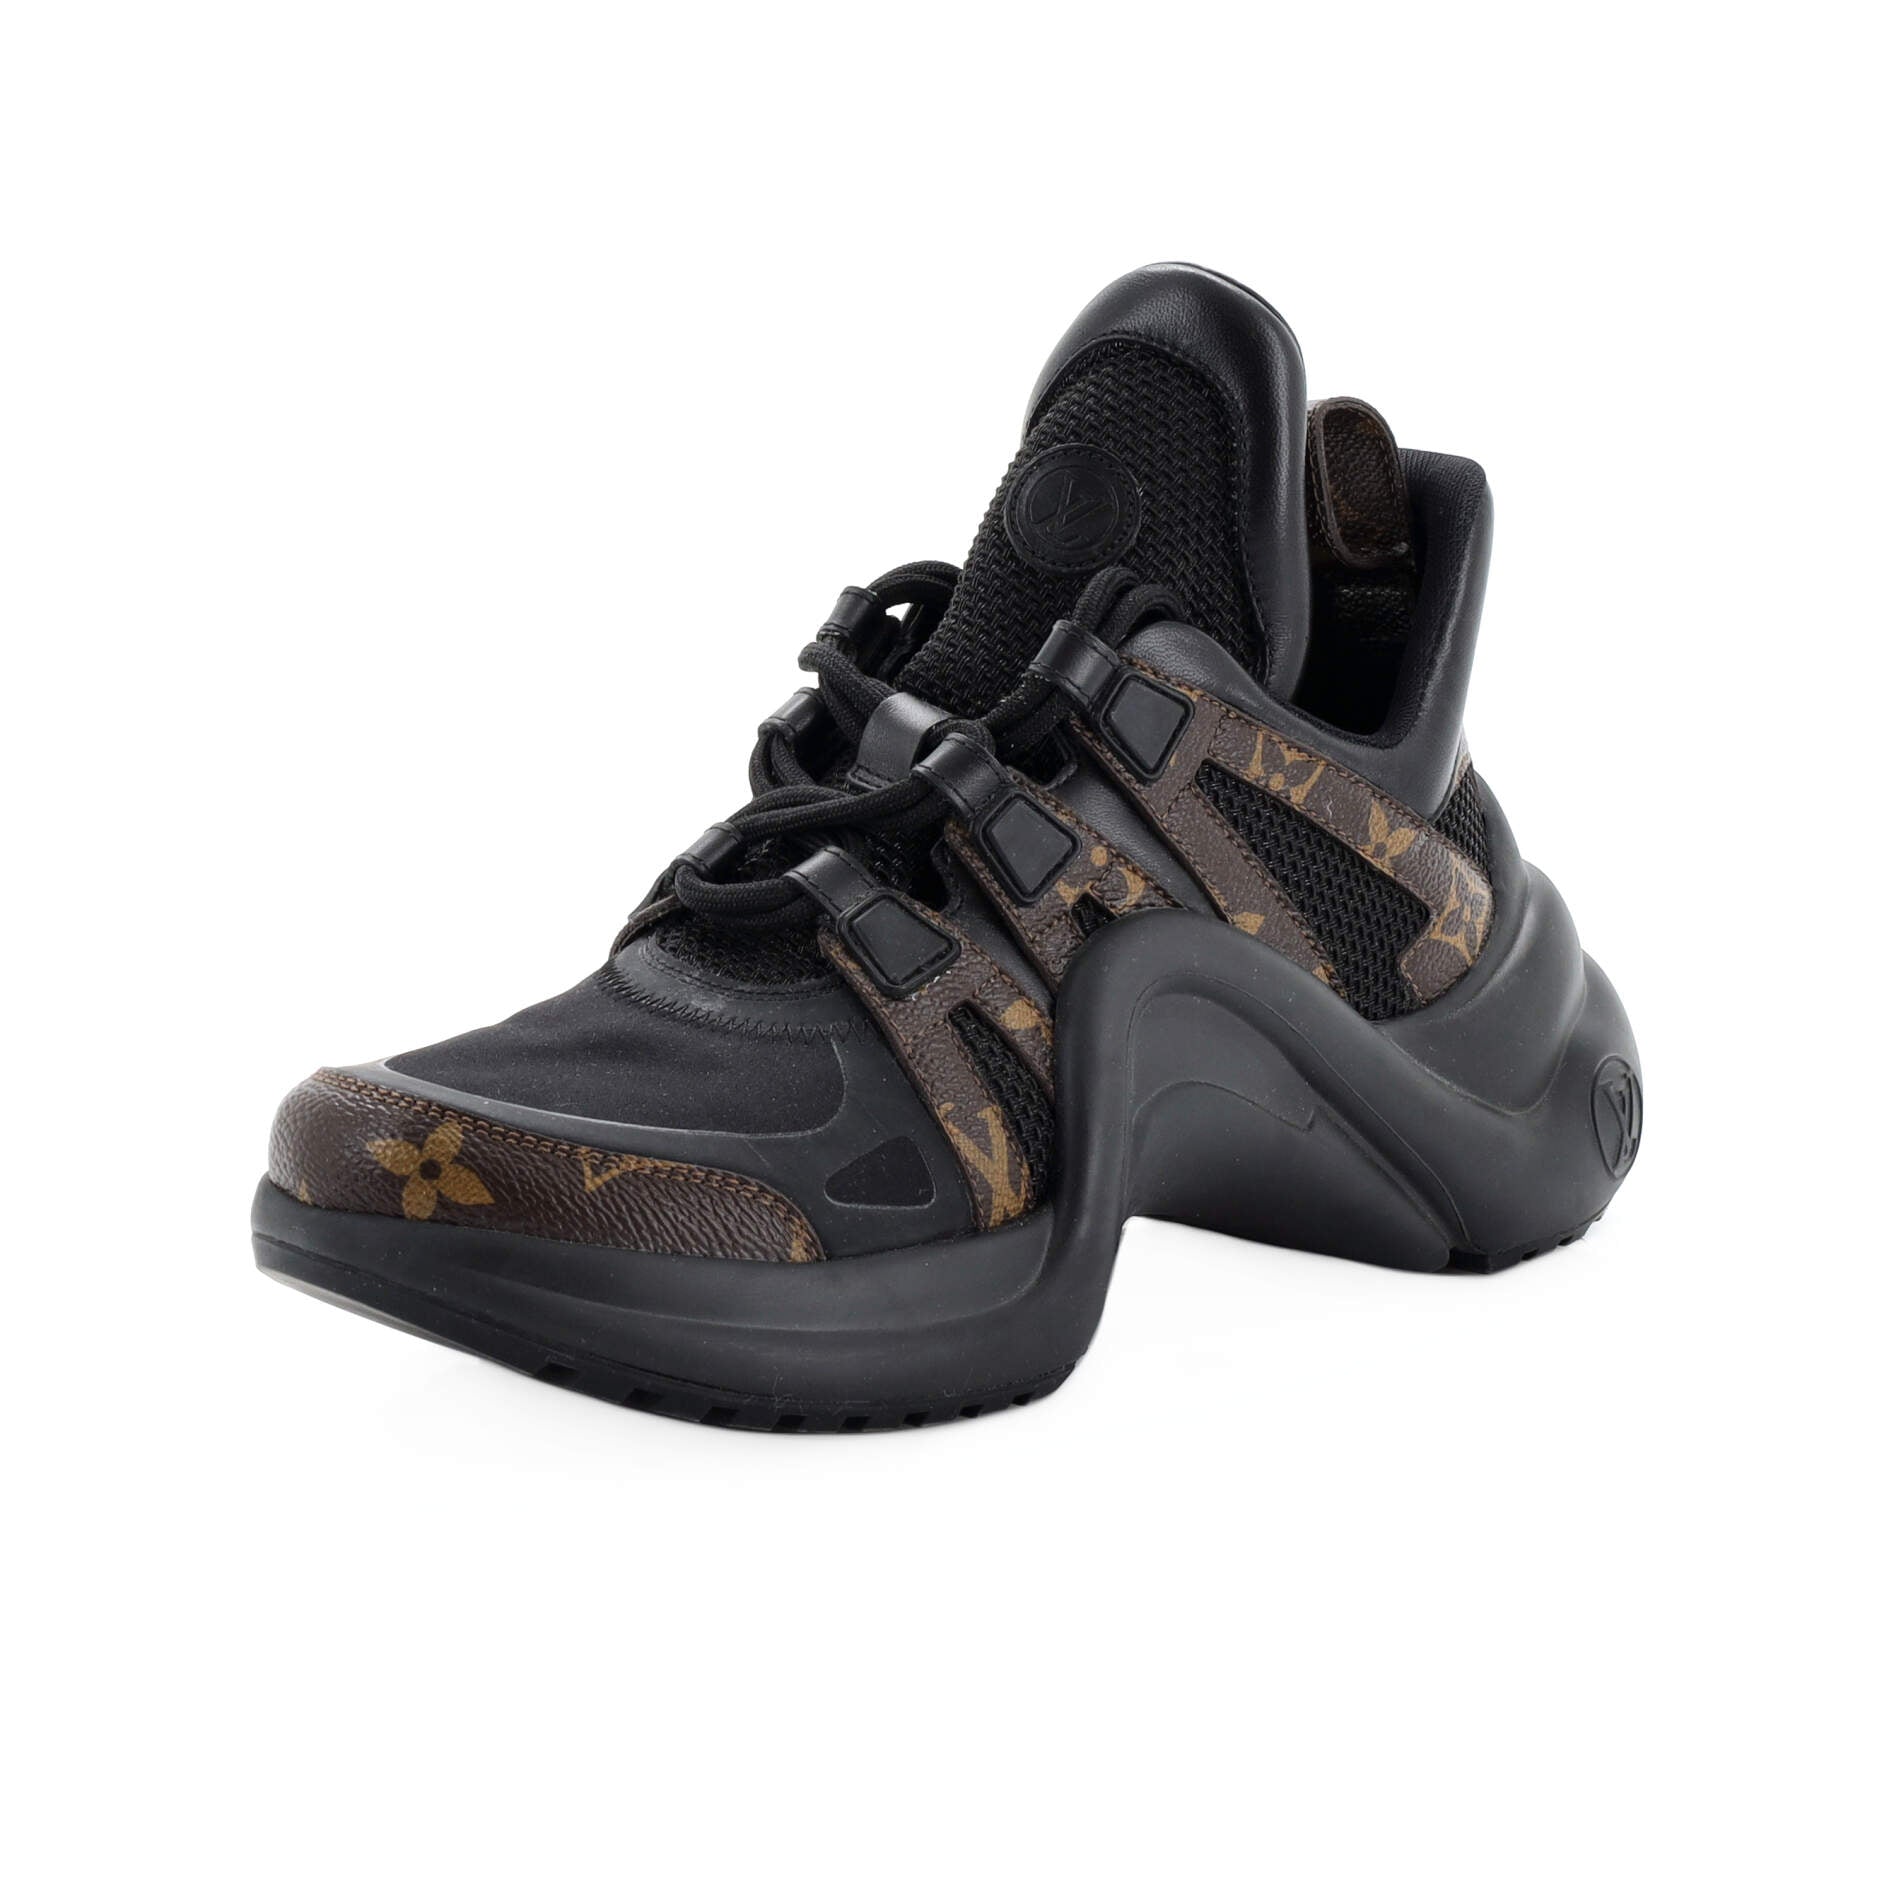 Louis Vuitton, Shoes, Louis Vuitton Authentic Calfskin Patent Monogram Lv  Archlight Sneakers Black 38